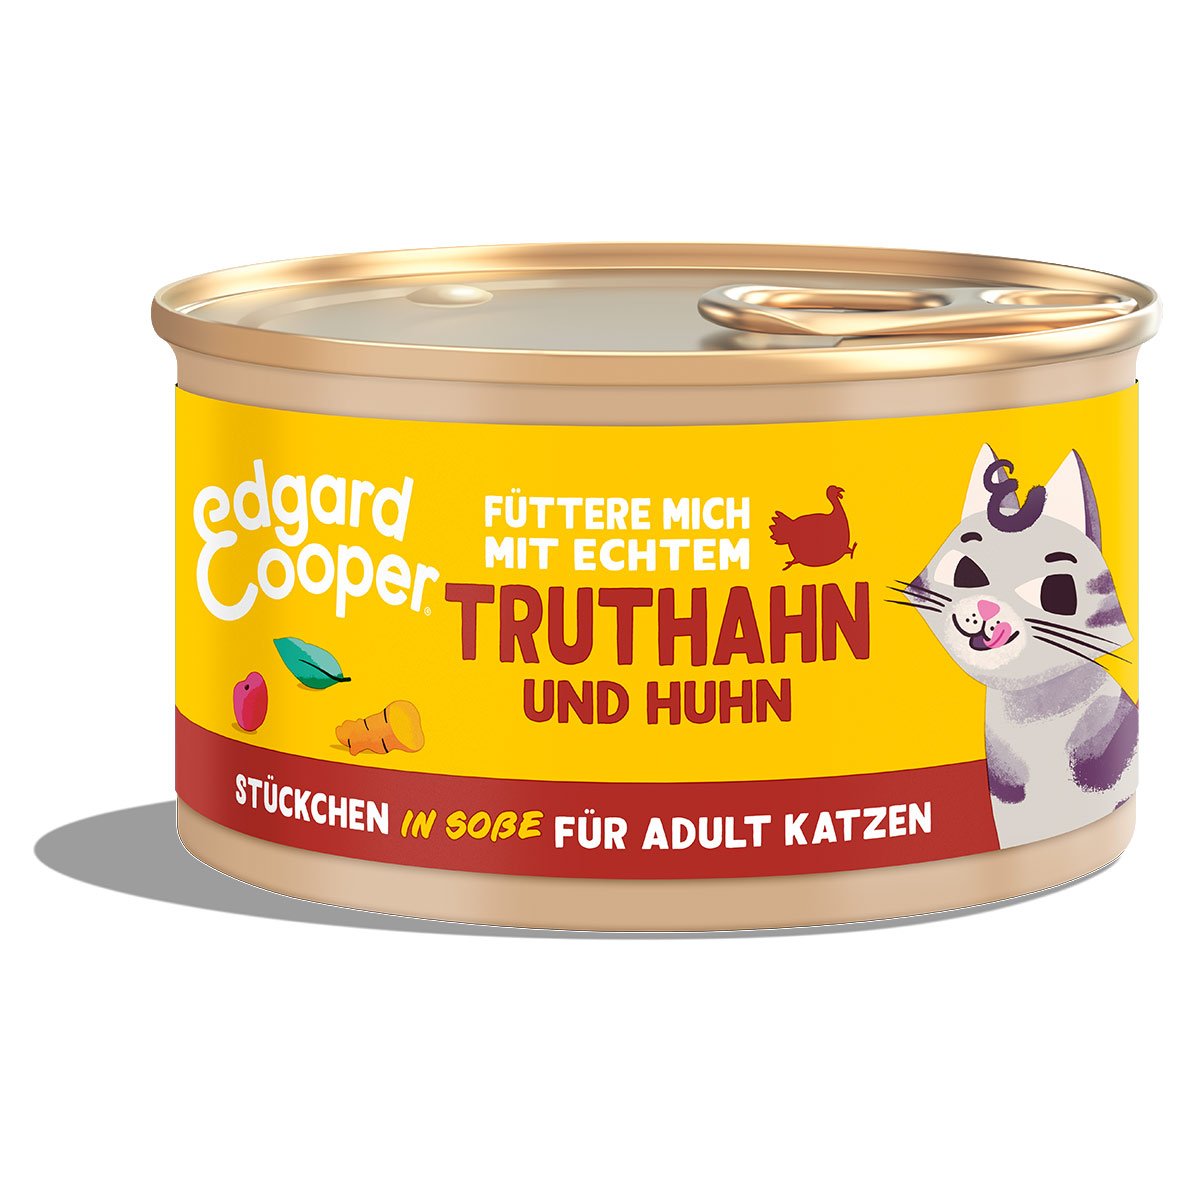 Edgard & Cooper Stückchen in Soße Truthahn und Huhn 6x85g von Edgard & Cooper